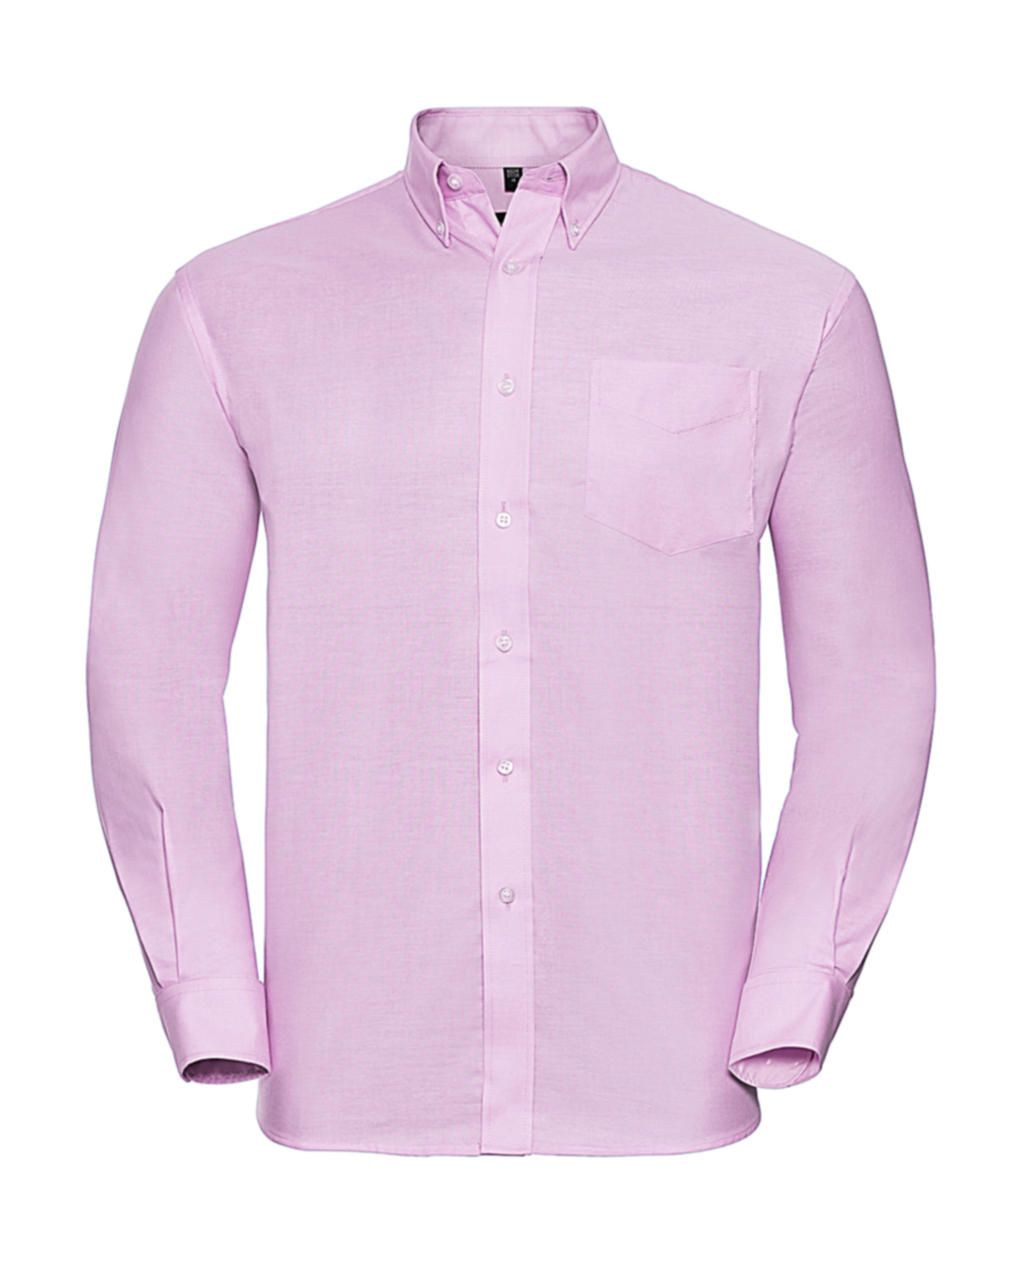 Košile Oxford s dlouhým rukávem Velikost: 3XL, Barva: Classic Pink